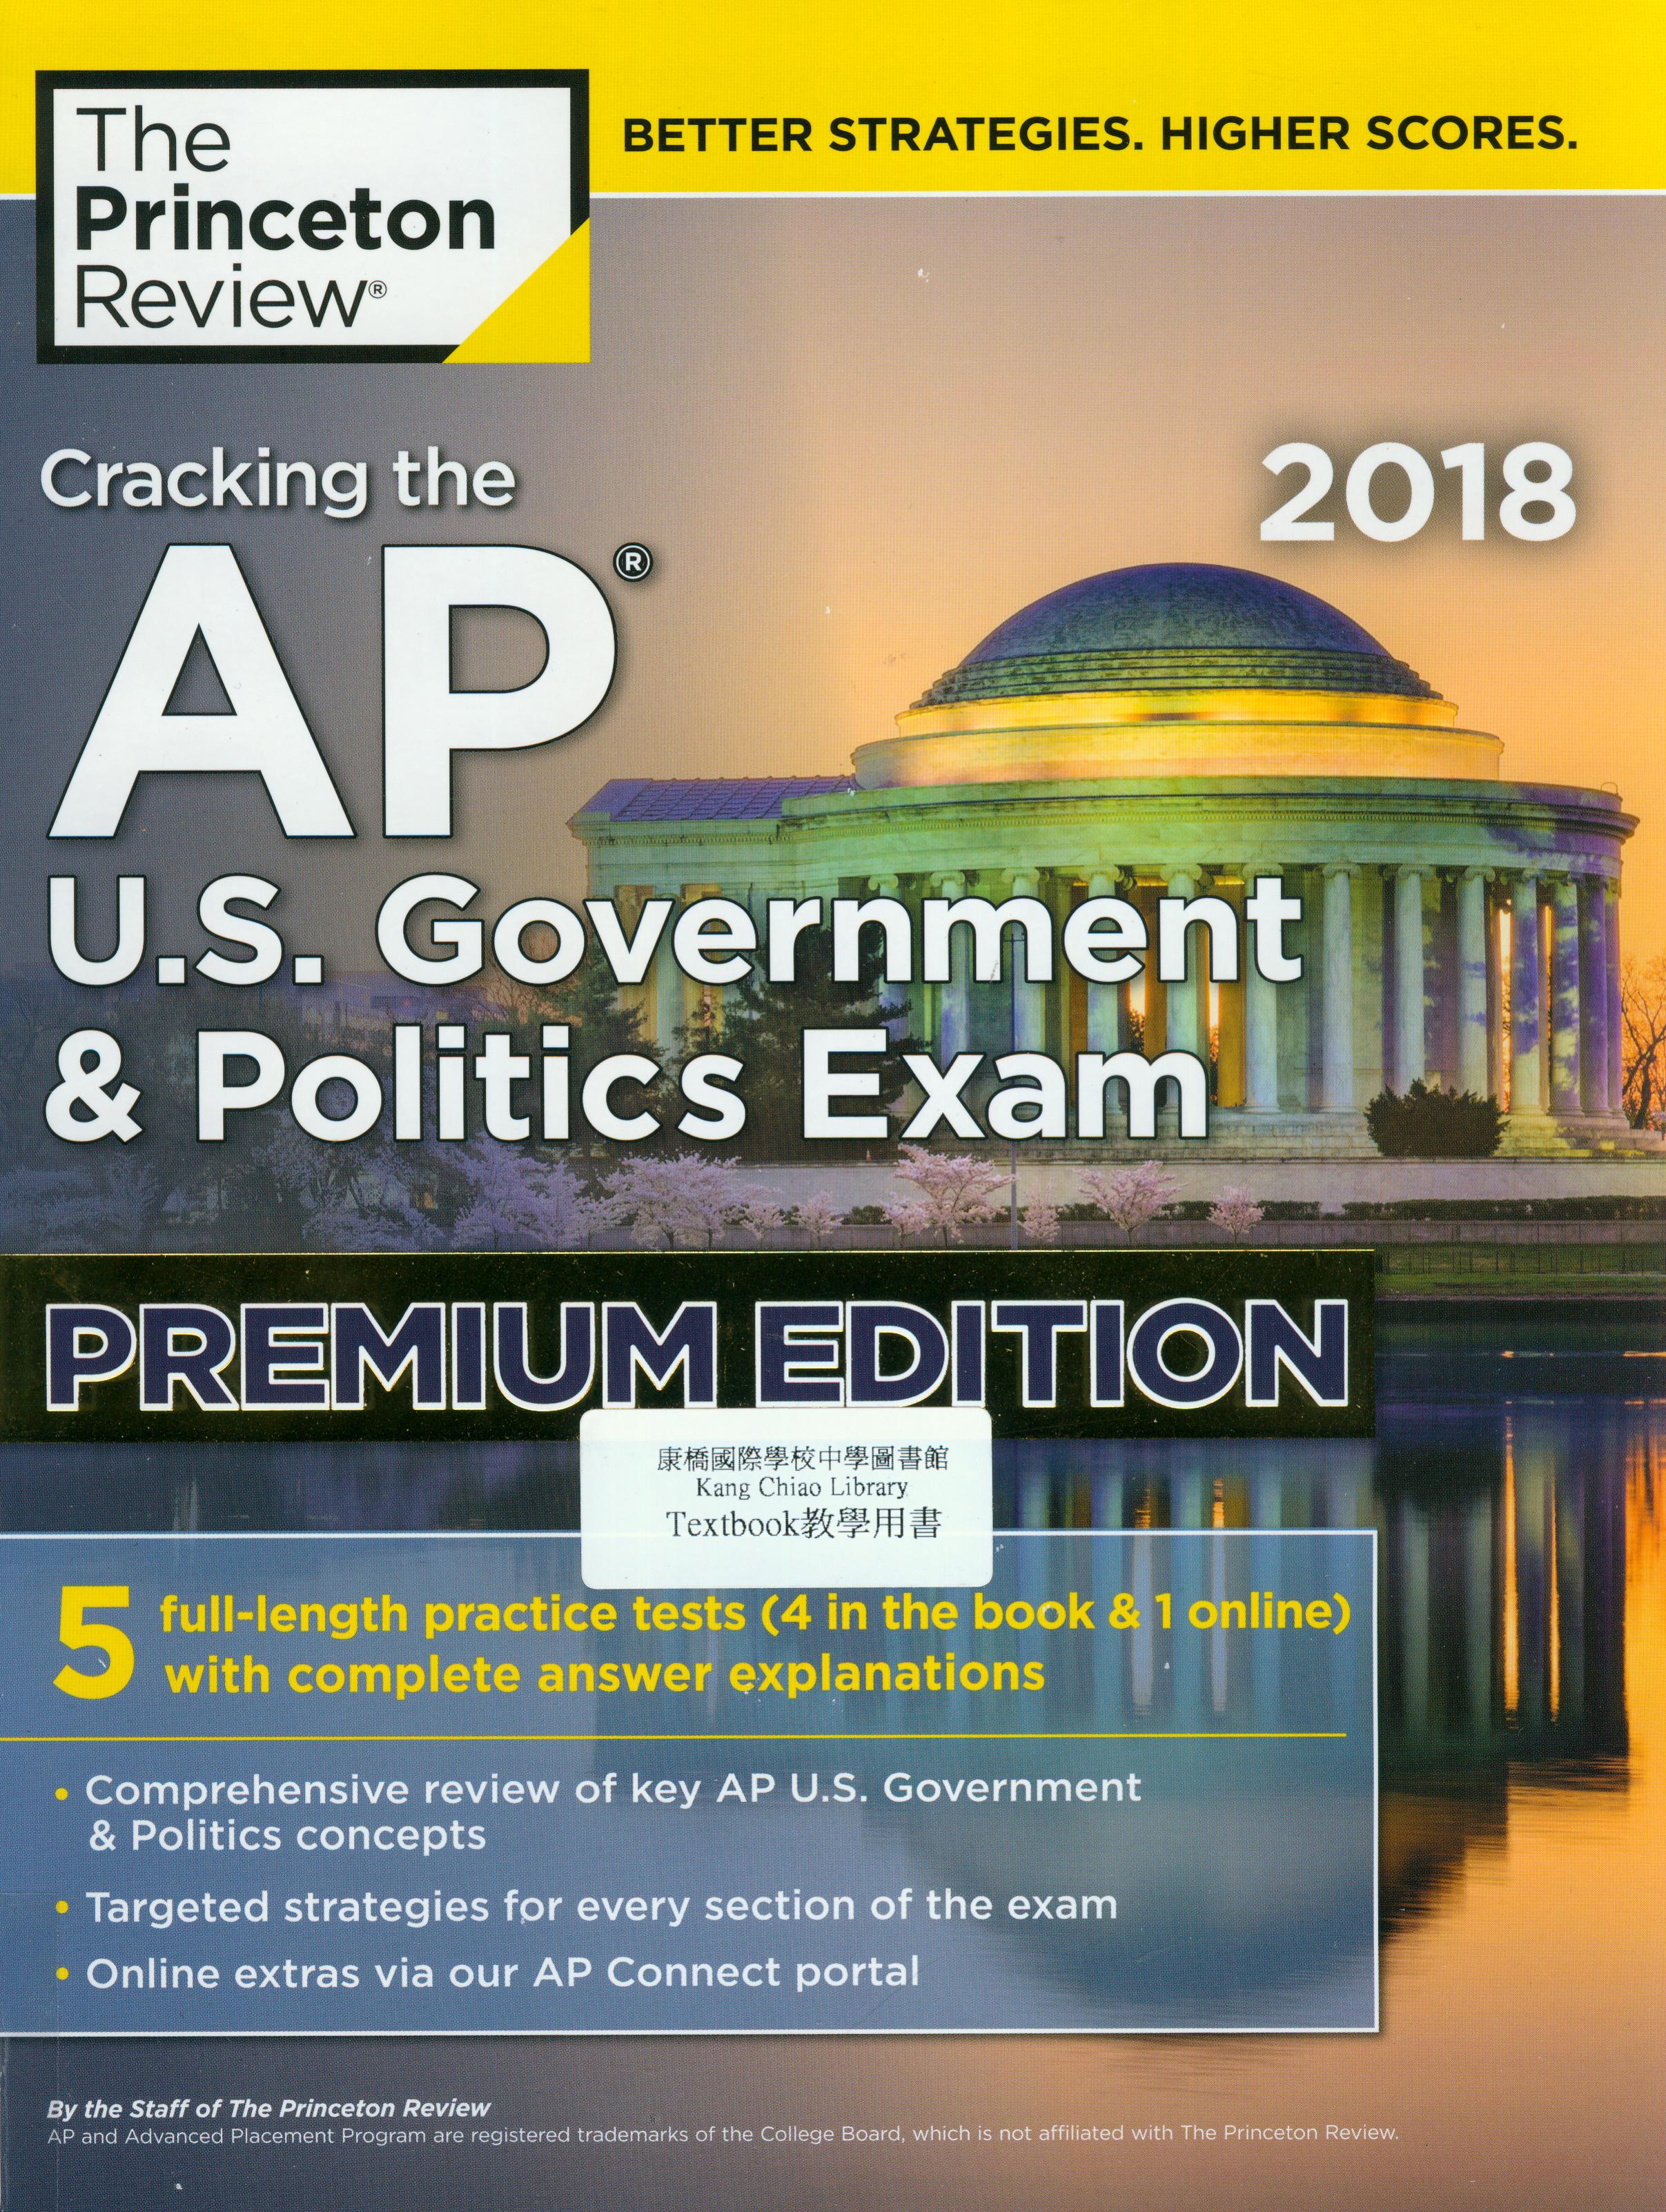 Cracking the AP U.S. government & politics exam premium 2018